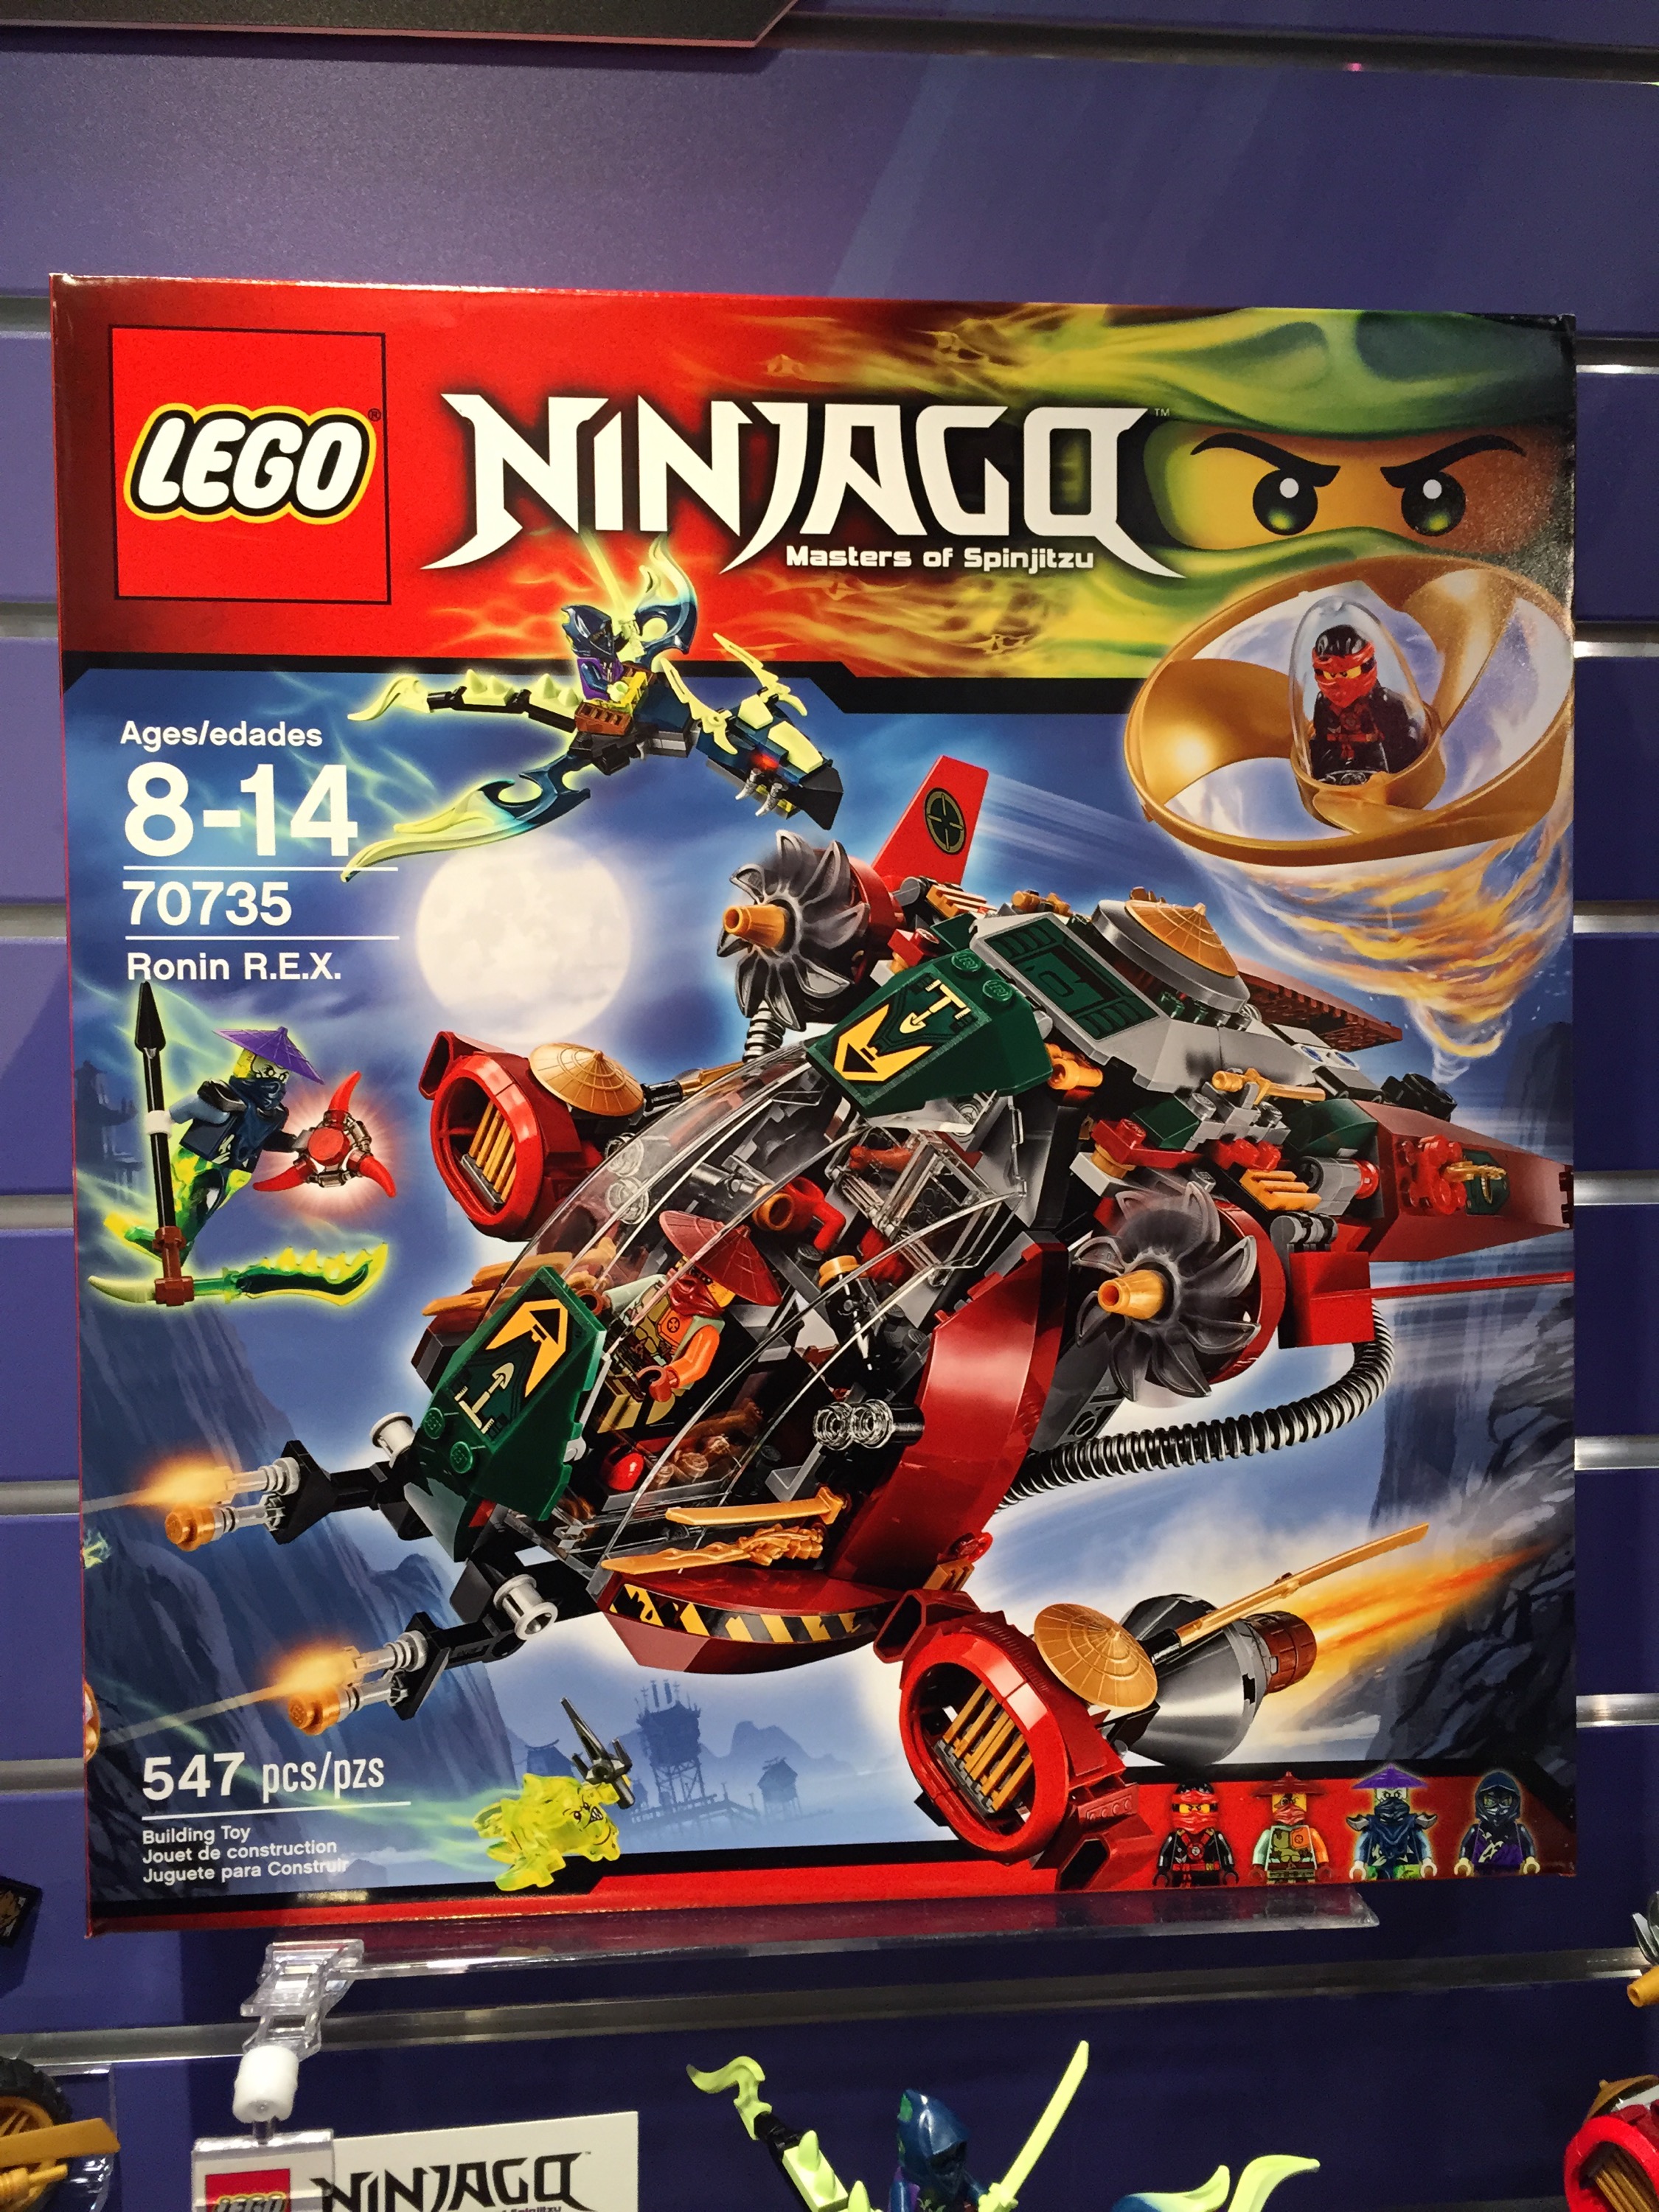 LEGO Ninjago Summer 2015 Sets Preview & Photo Gallery! - Bricks and Bloks